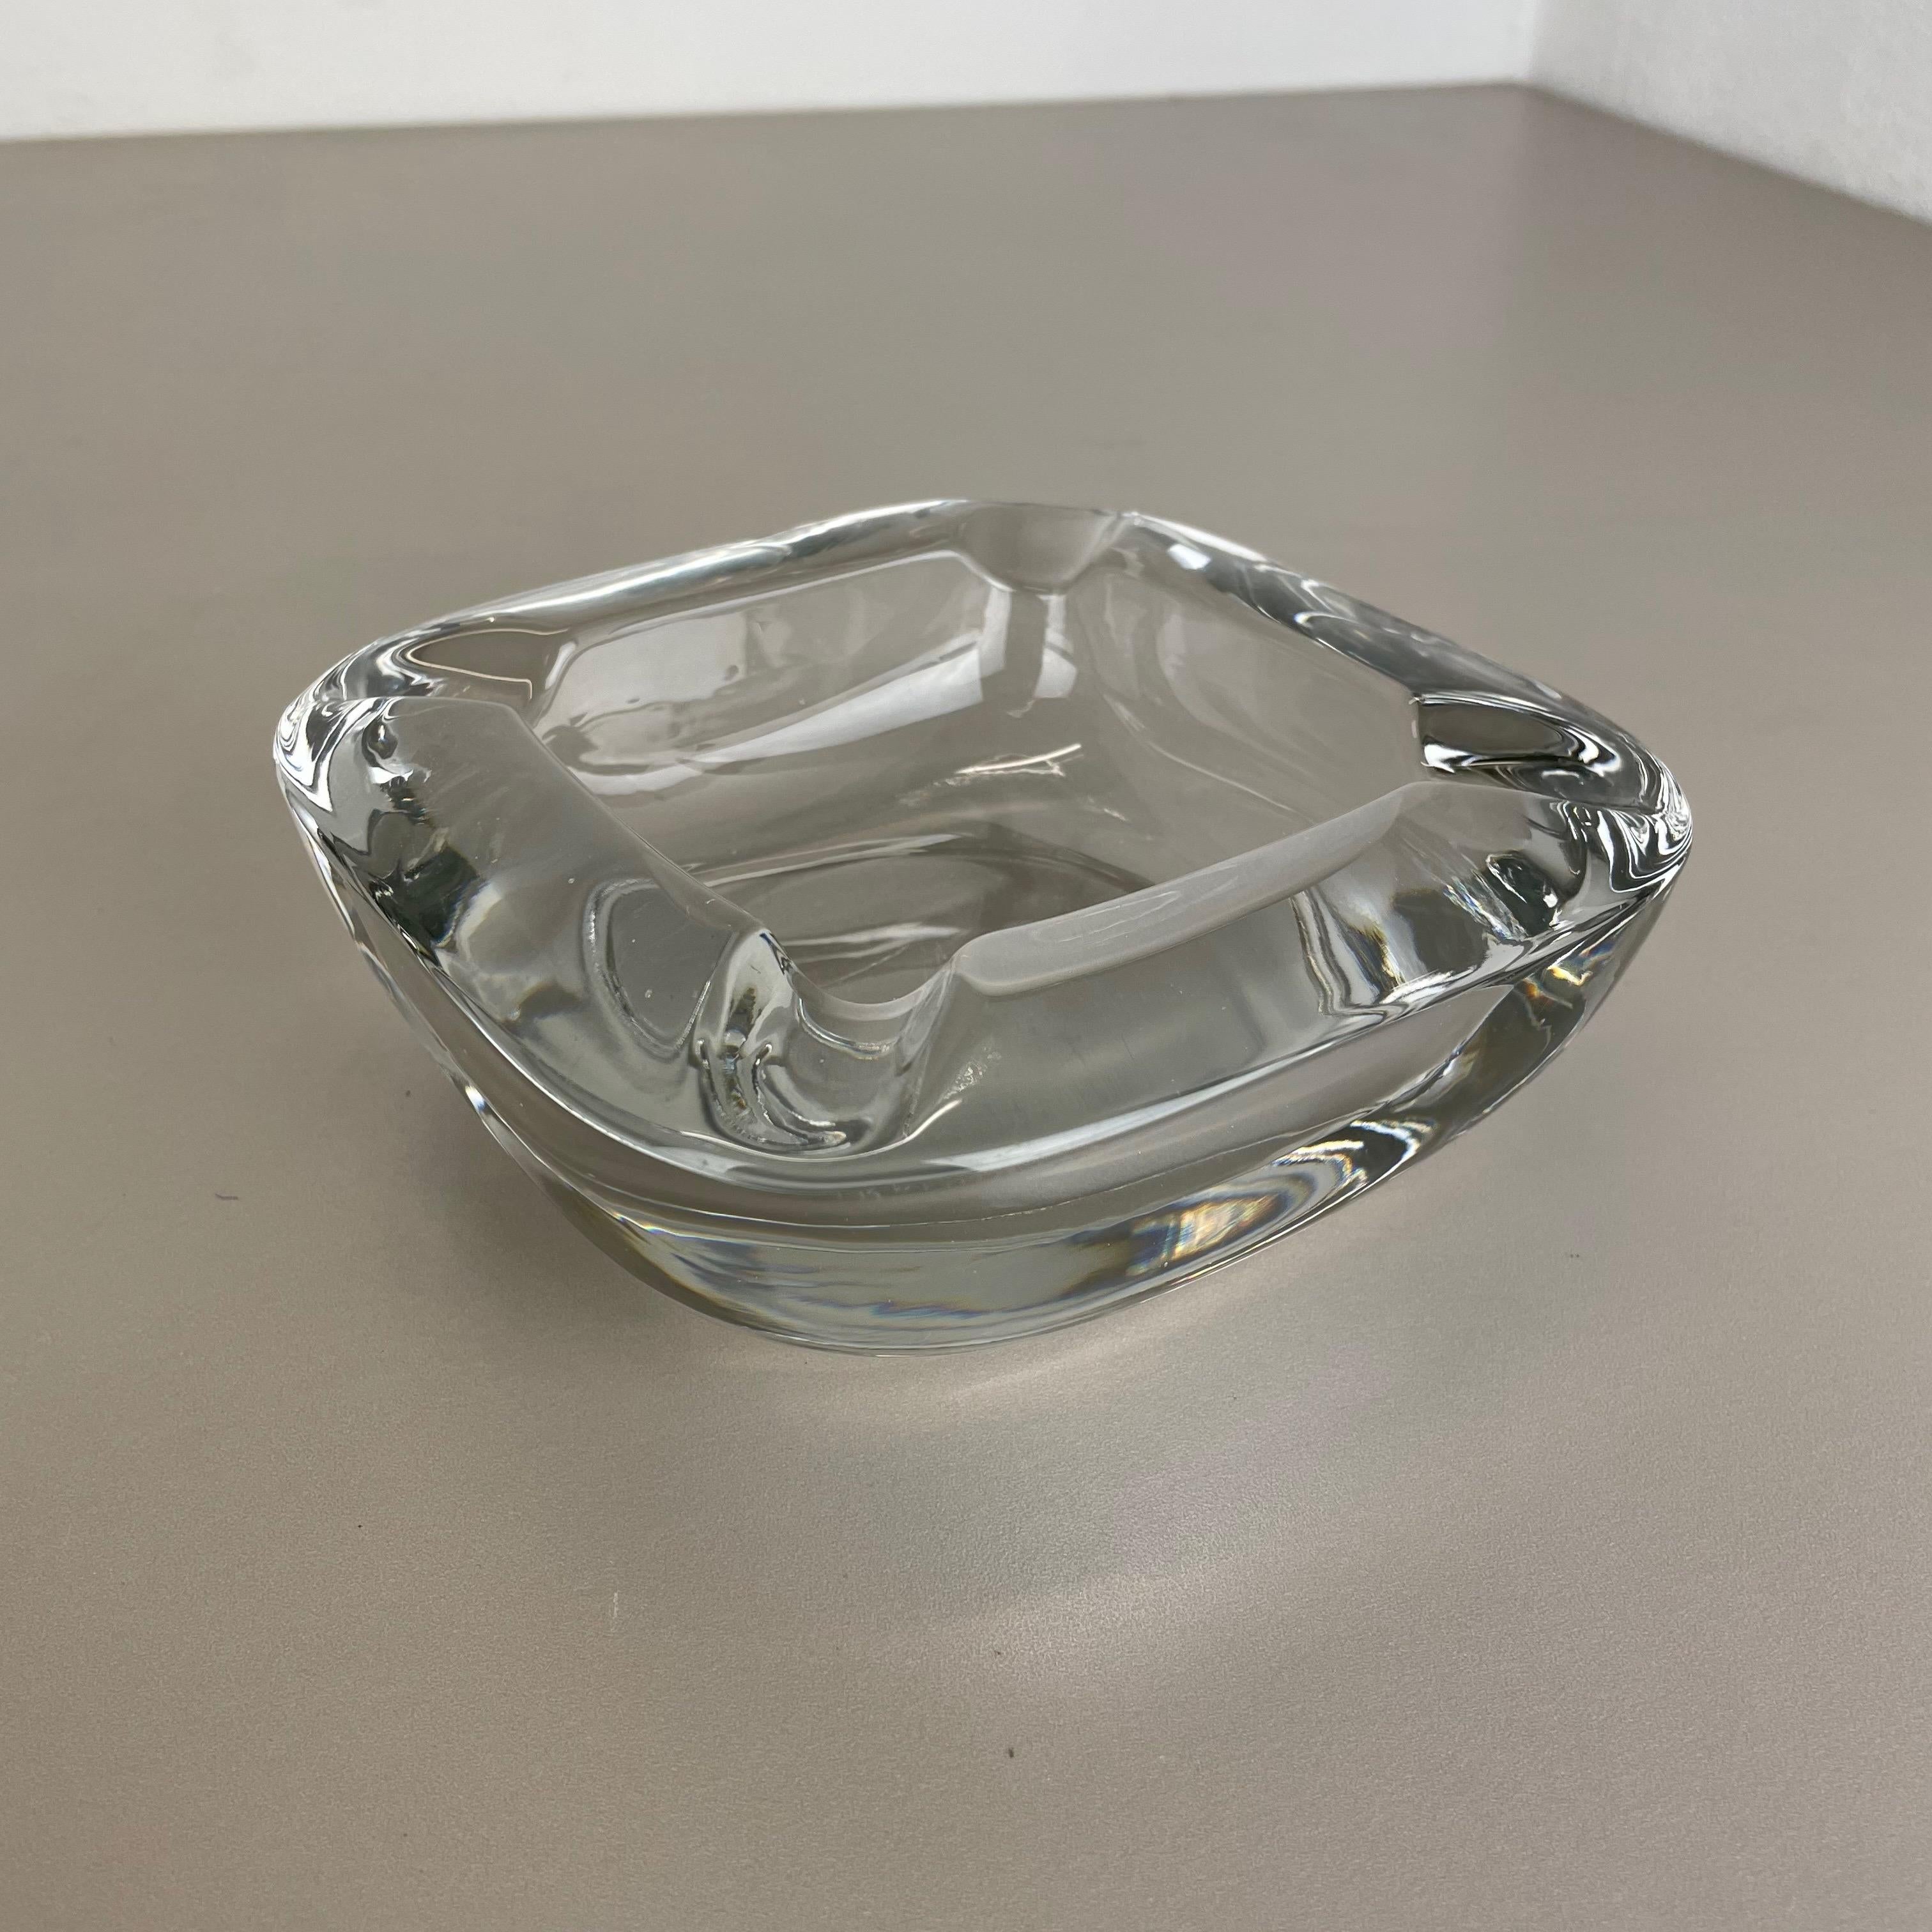 Artikel: Aschenbecher aus Kristallglas



Produzent: ART VANNES FRANCE (markiert)



Alter: 1970er Jahre



 

Wunderschönes schweres Glaselement, das in den 1970er Jahren von Art Vannes in Frankreich entworfen und hergestellt wurde.